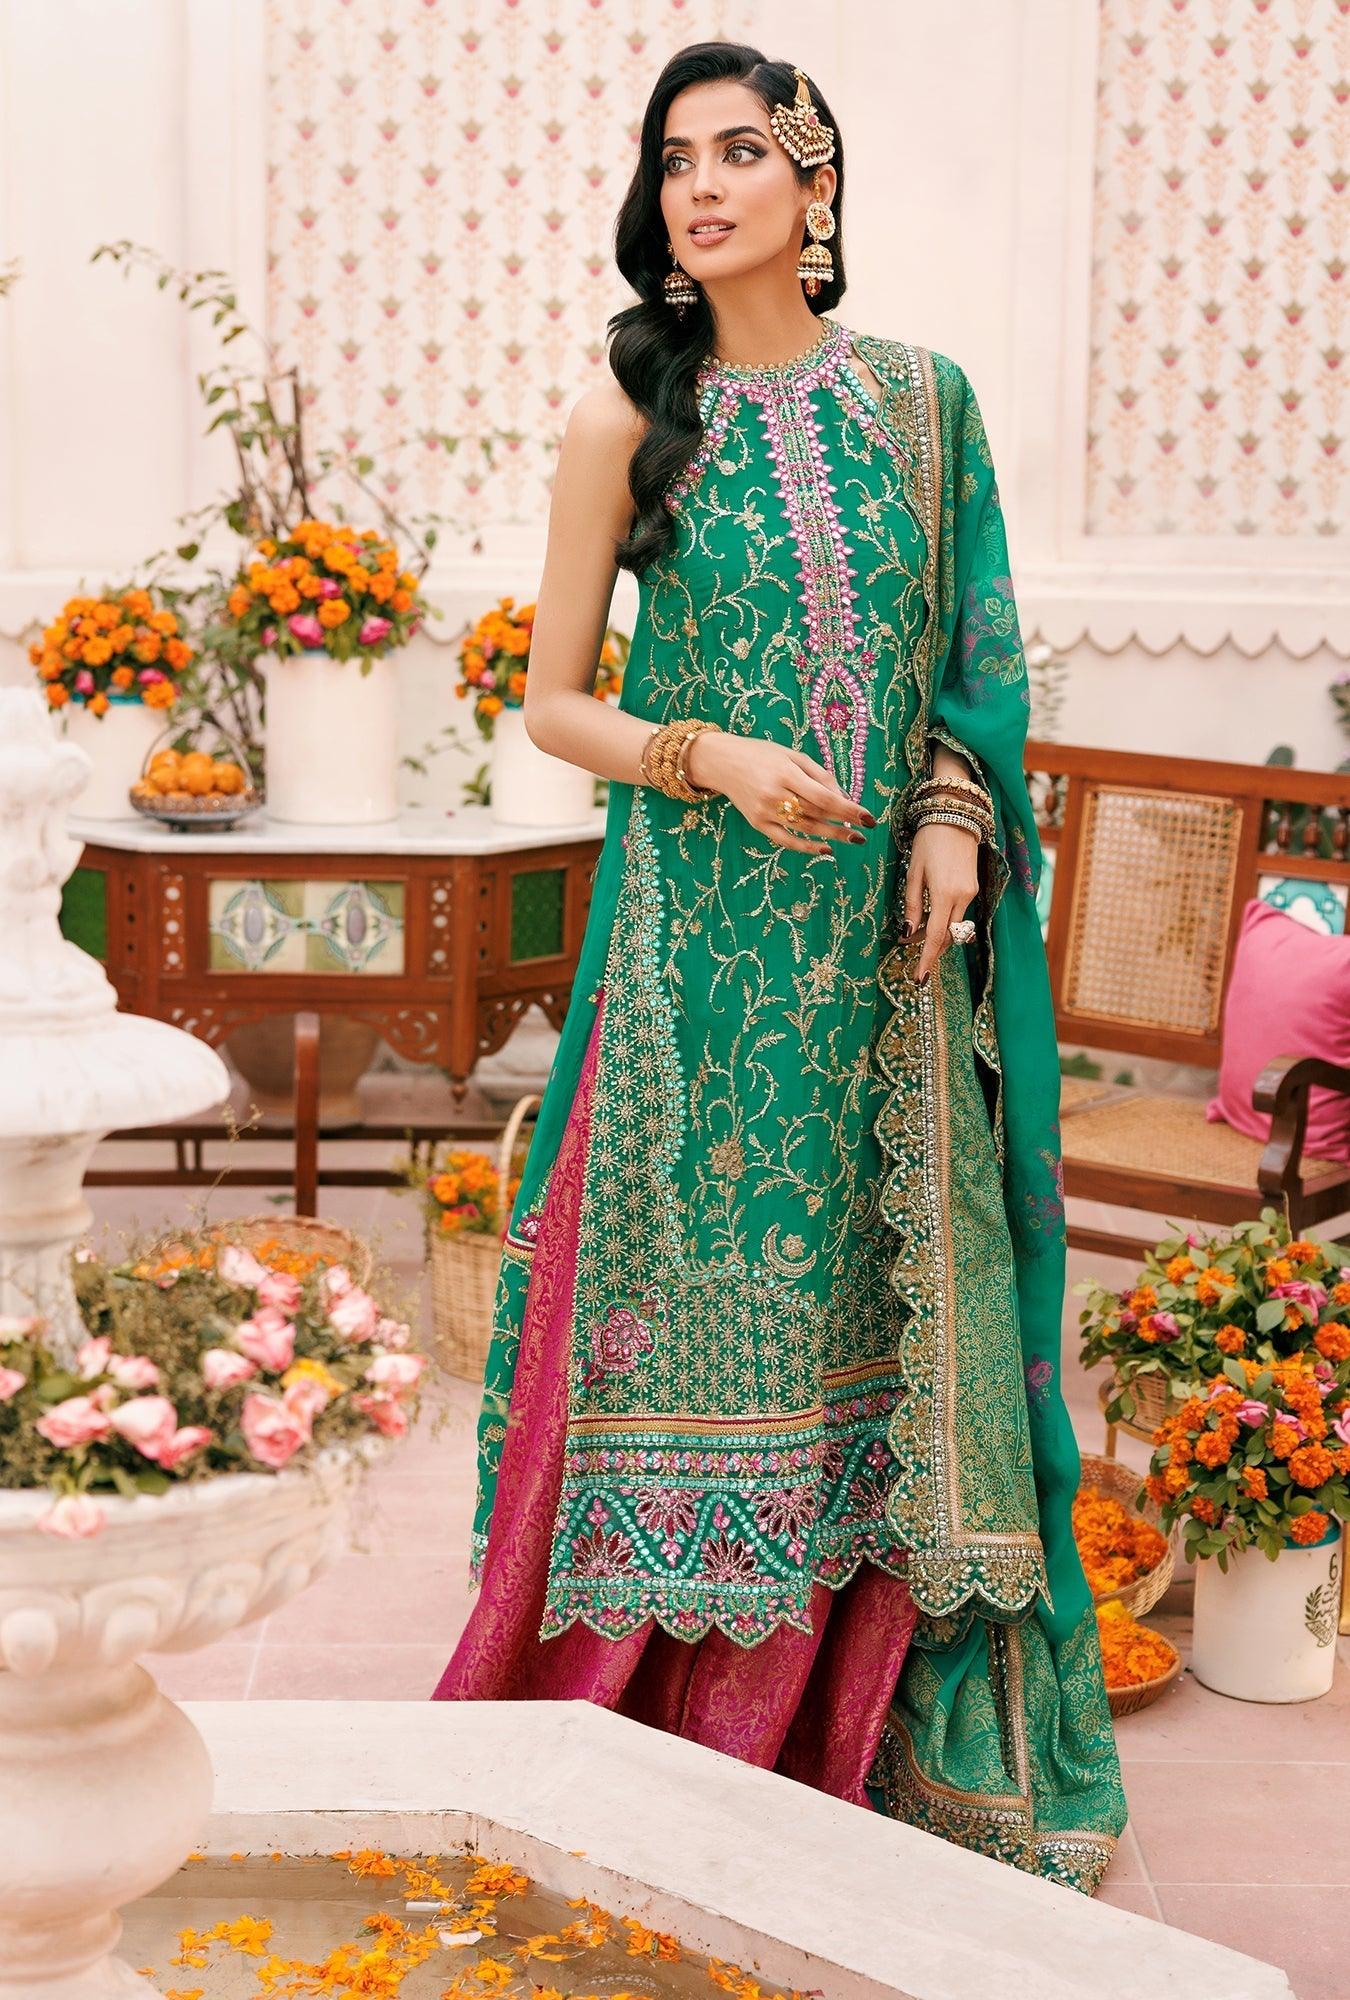 Kyra 04 - Noor Wedding Collection 2022 - Kyra 04 - Noor Wedding Collection 2022 - Shahana Collection